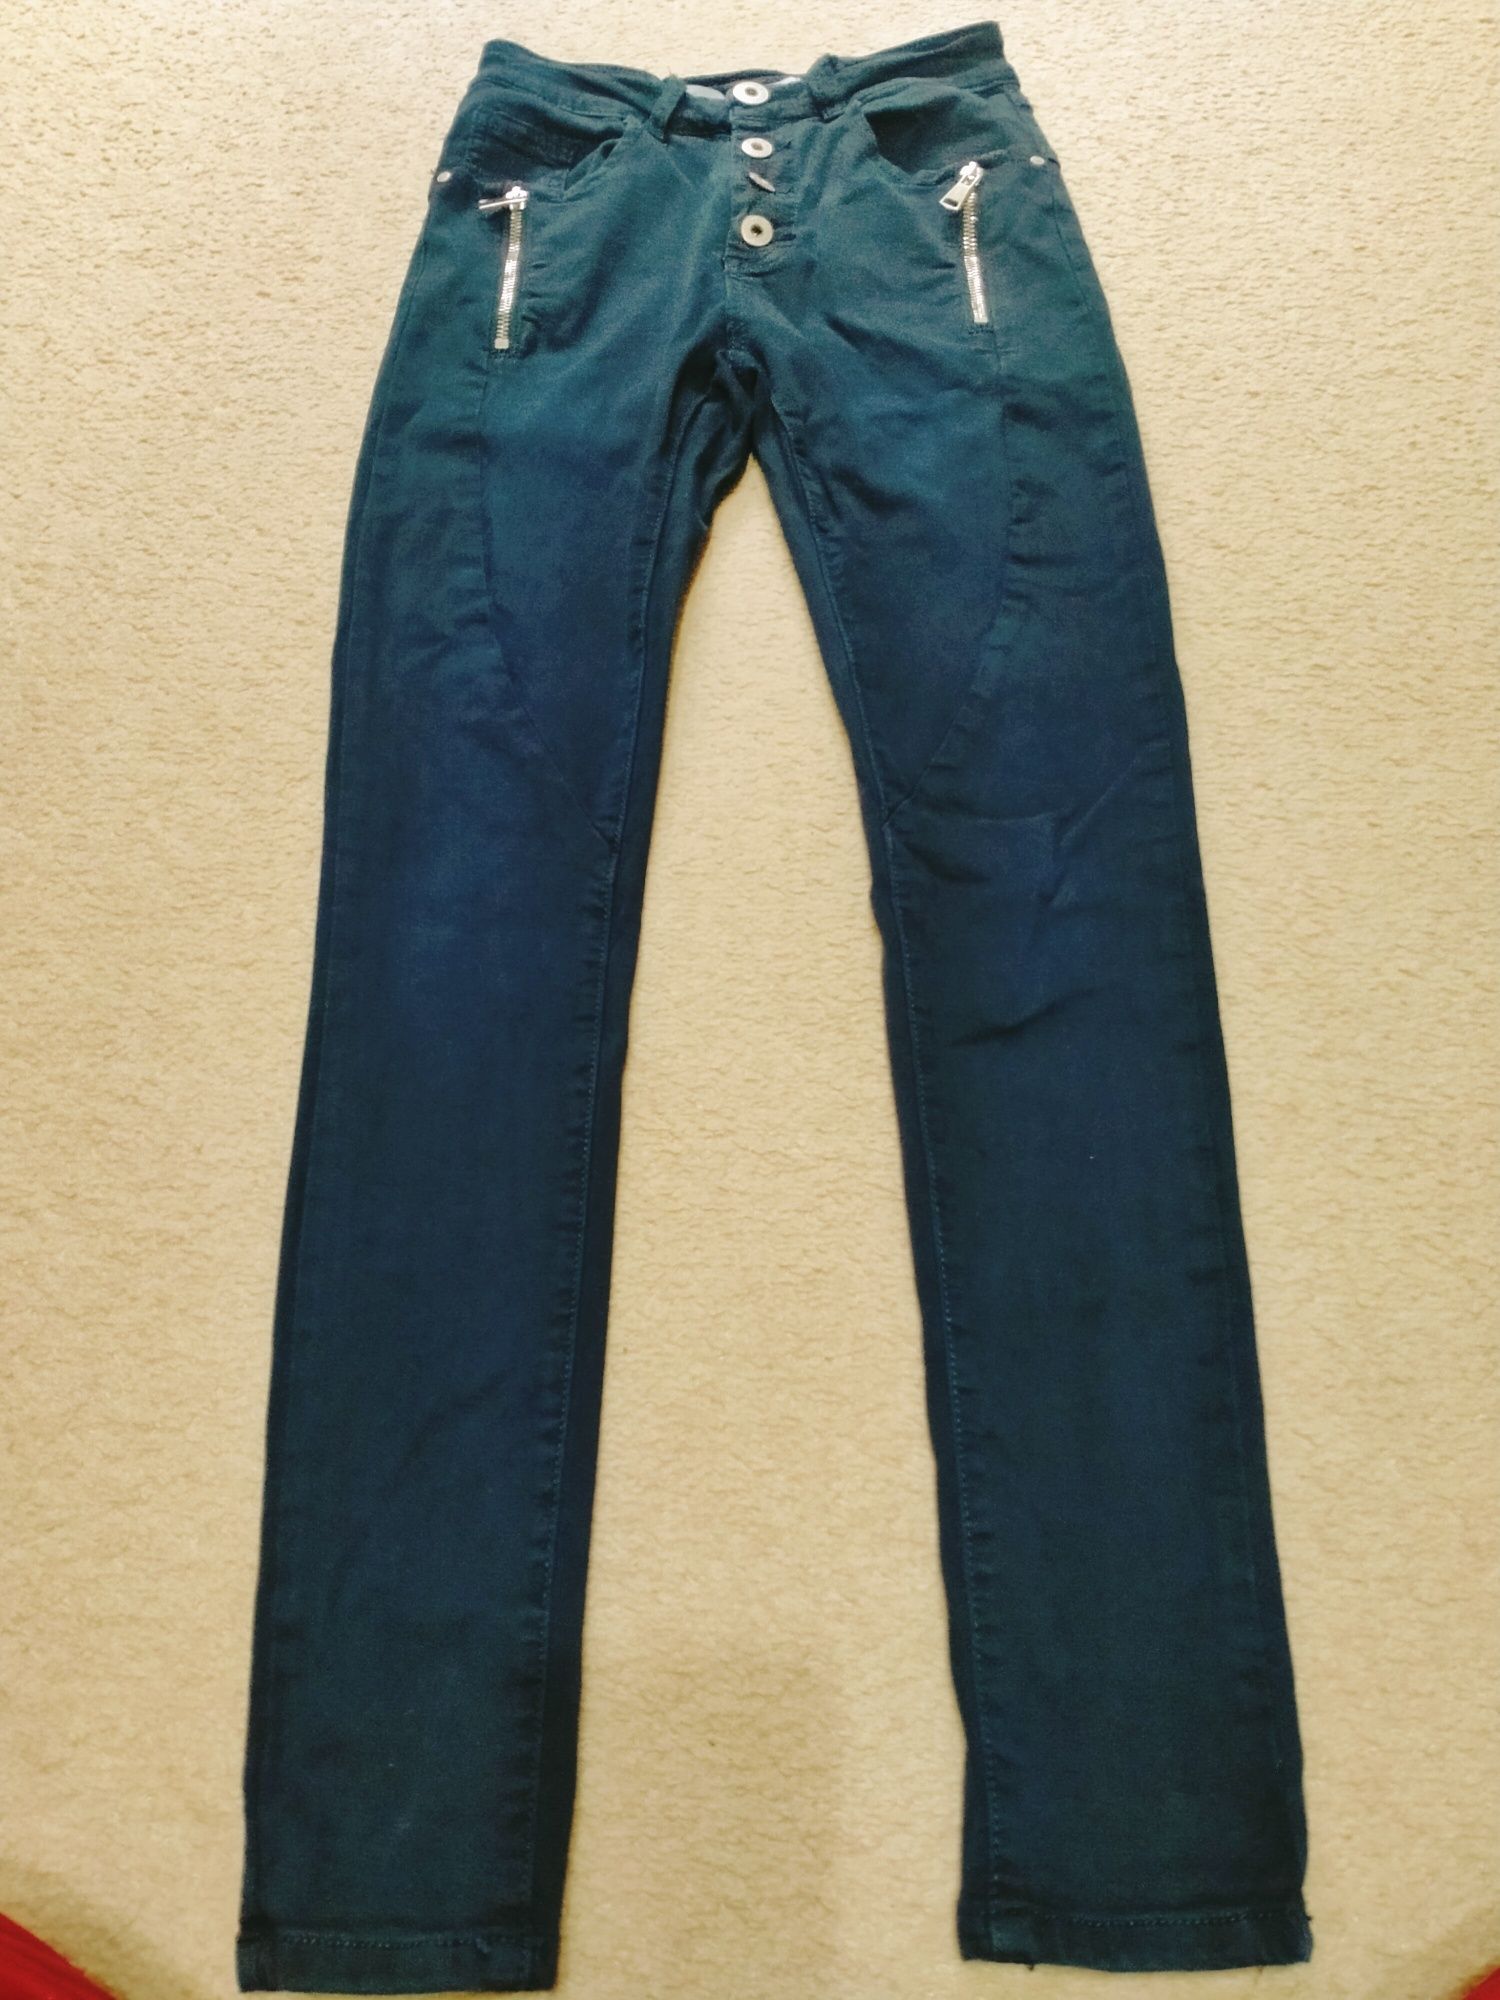 Spodnie jeansowe S/36